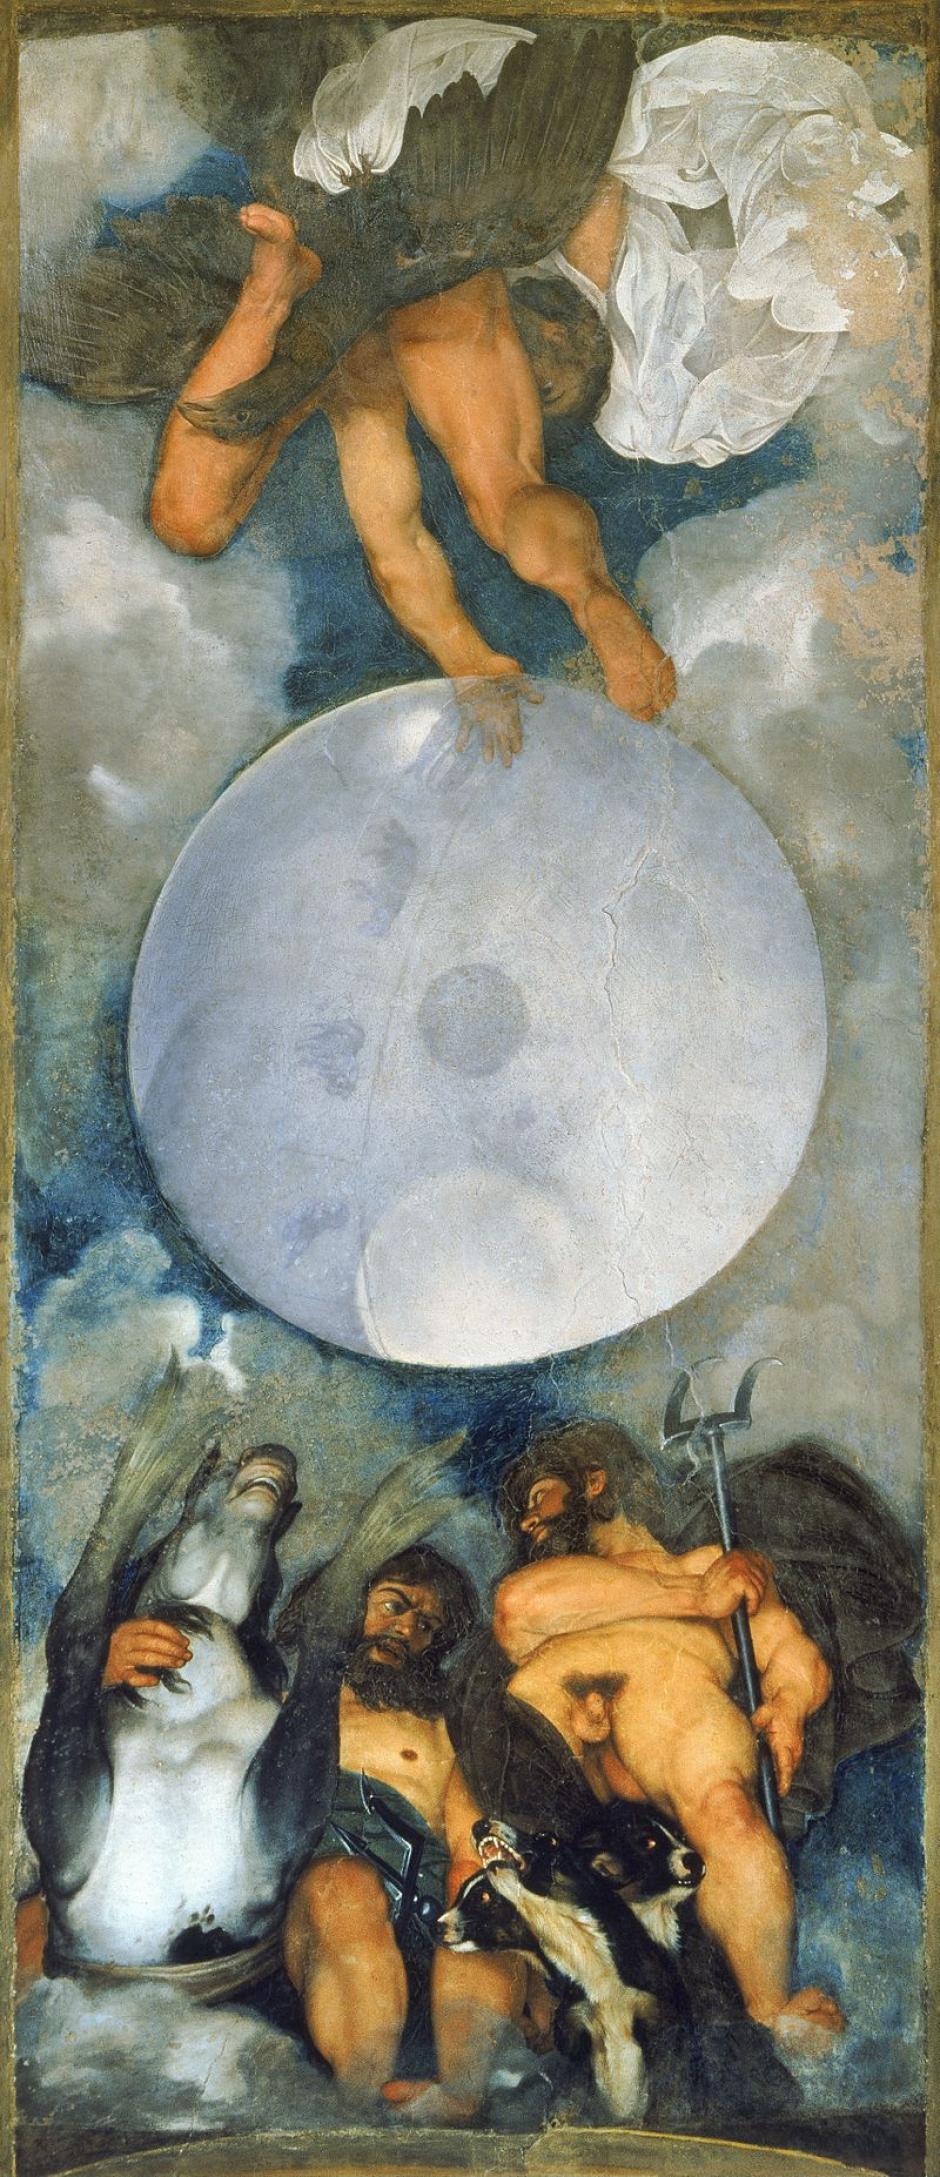 Júpiter, Neptuno y Plutón en el mural de Villa Aurora, de Caravaggio.